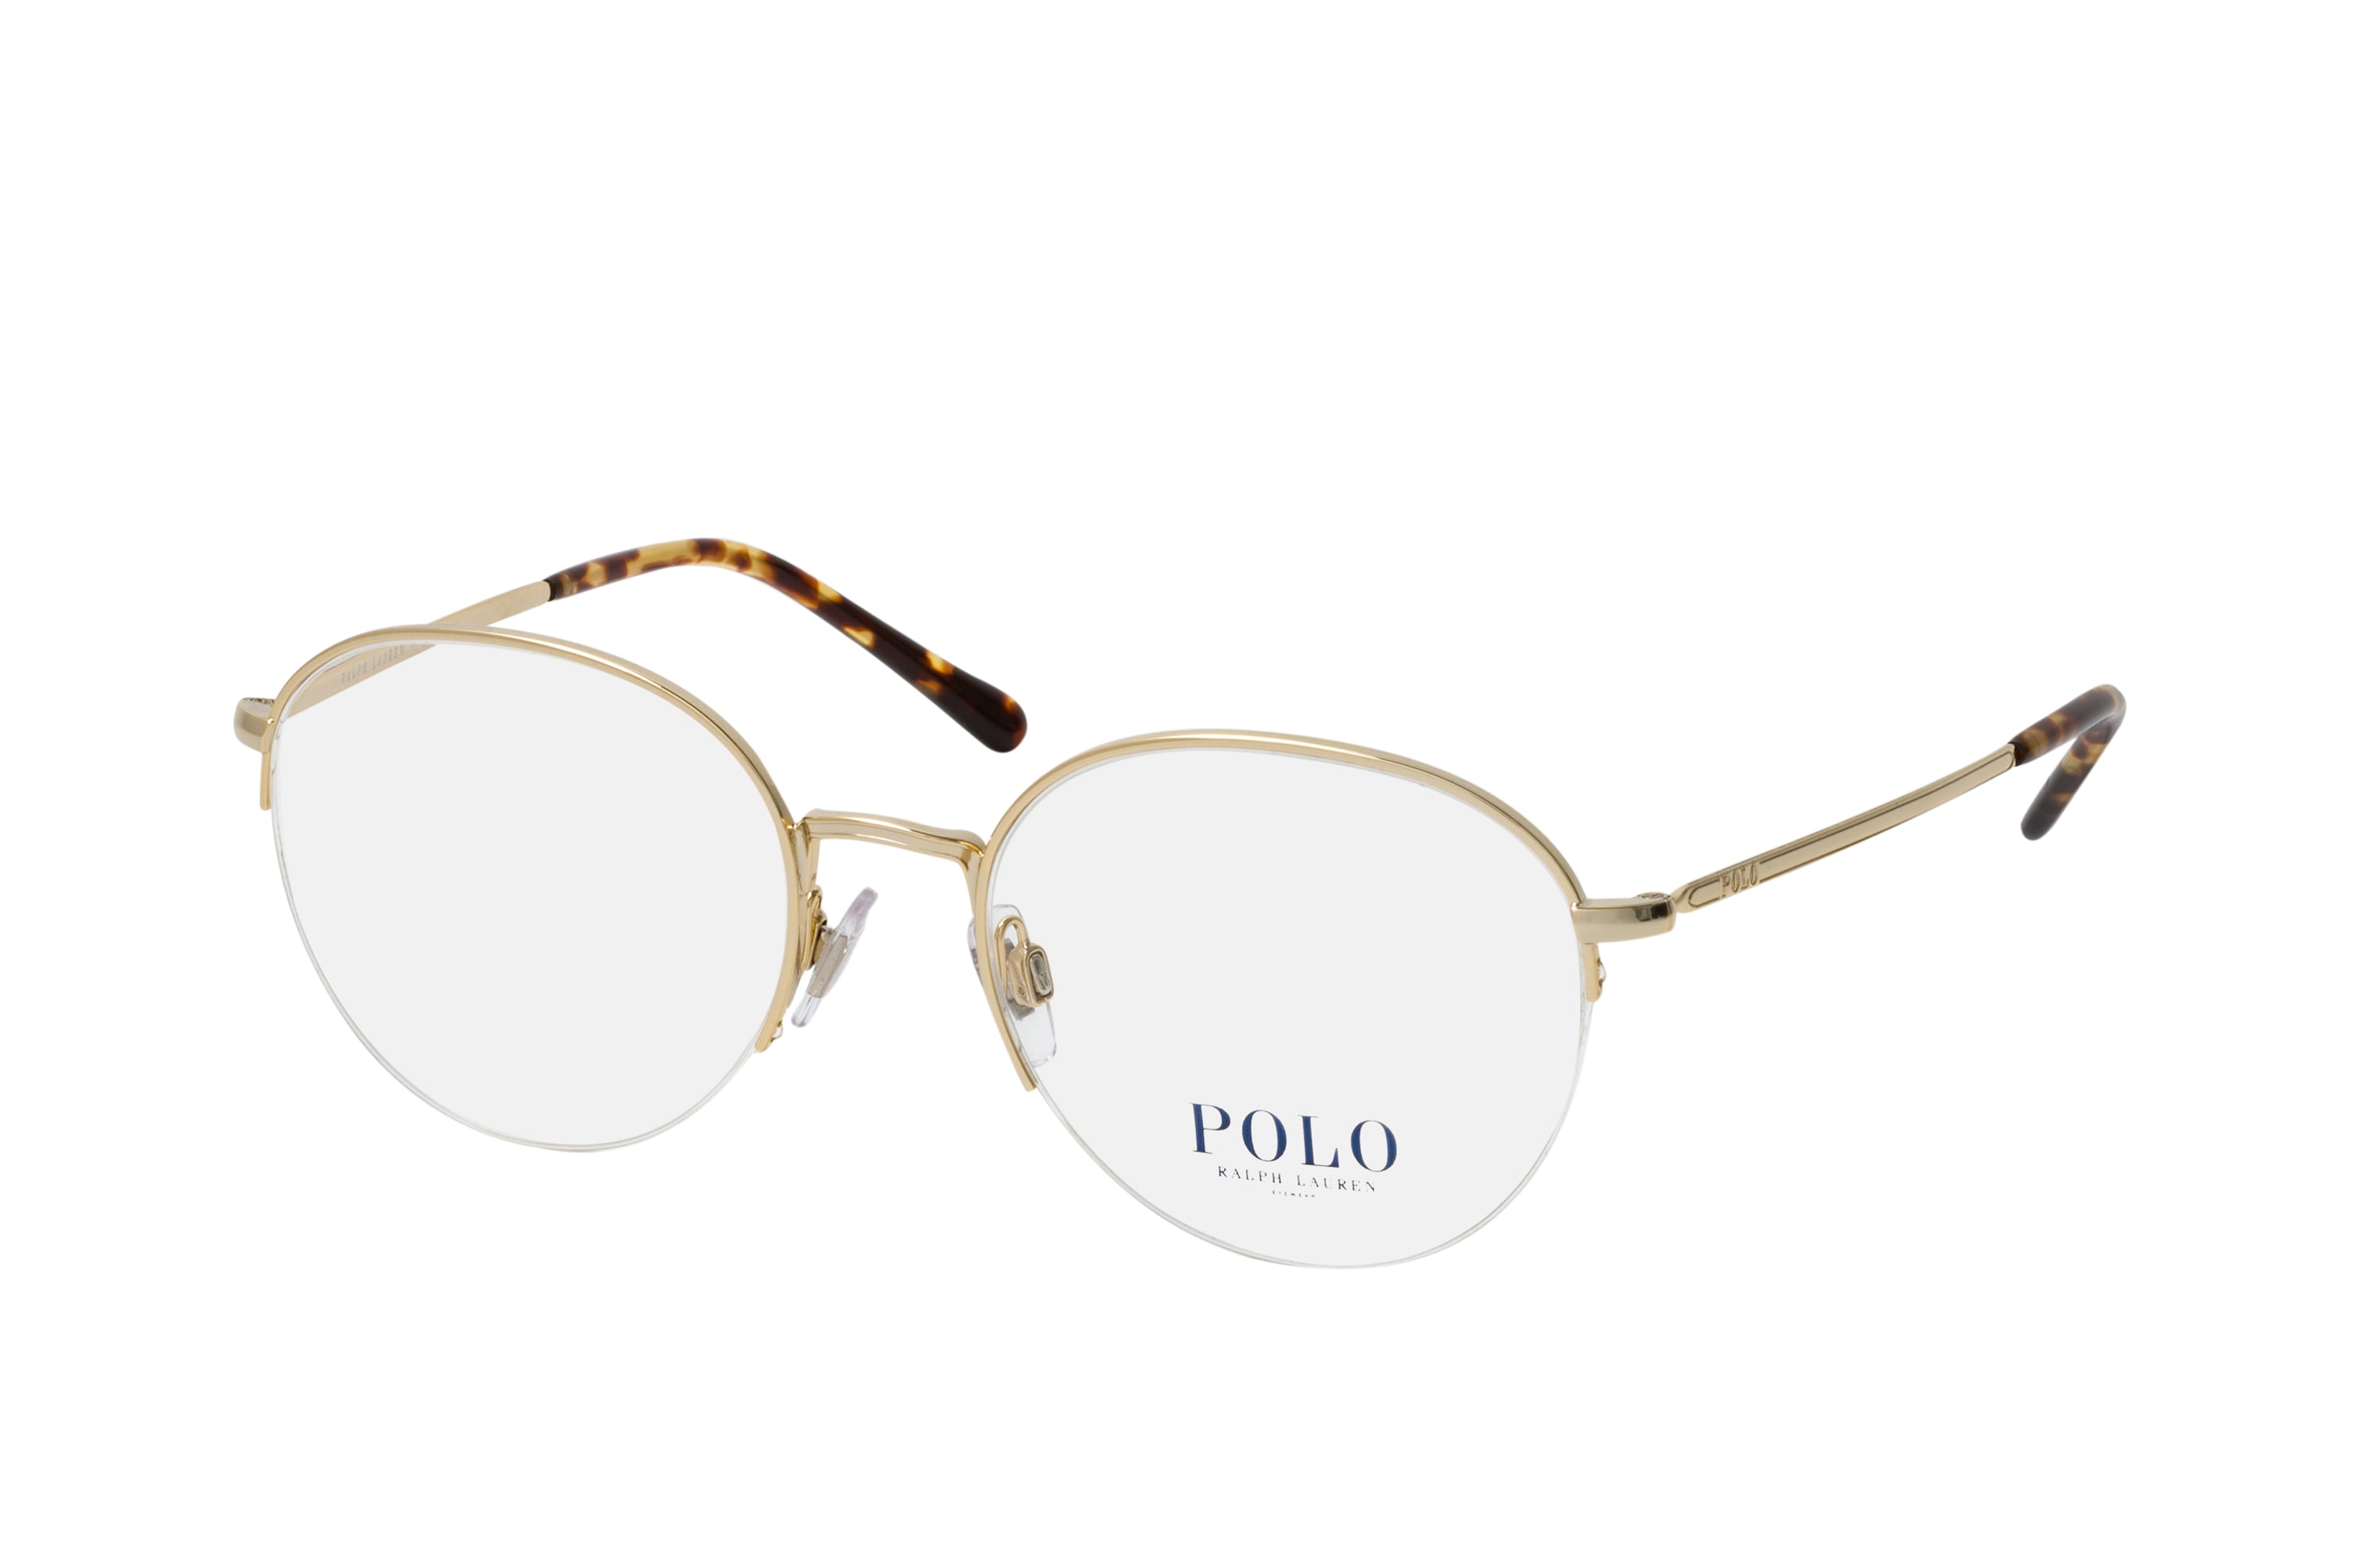 Buy Polo Ralph Lauren PH 1204 9116 Glasses